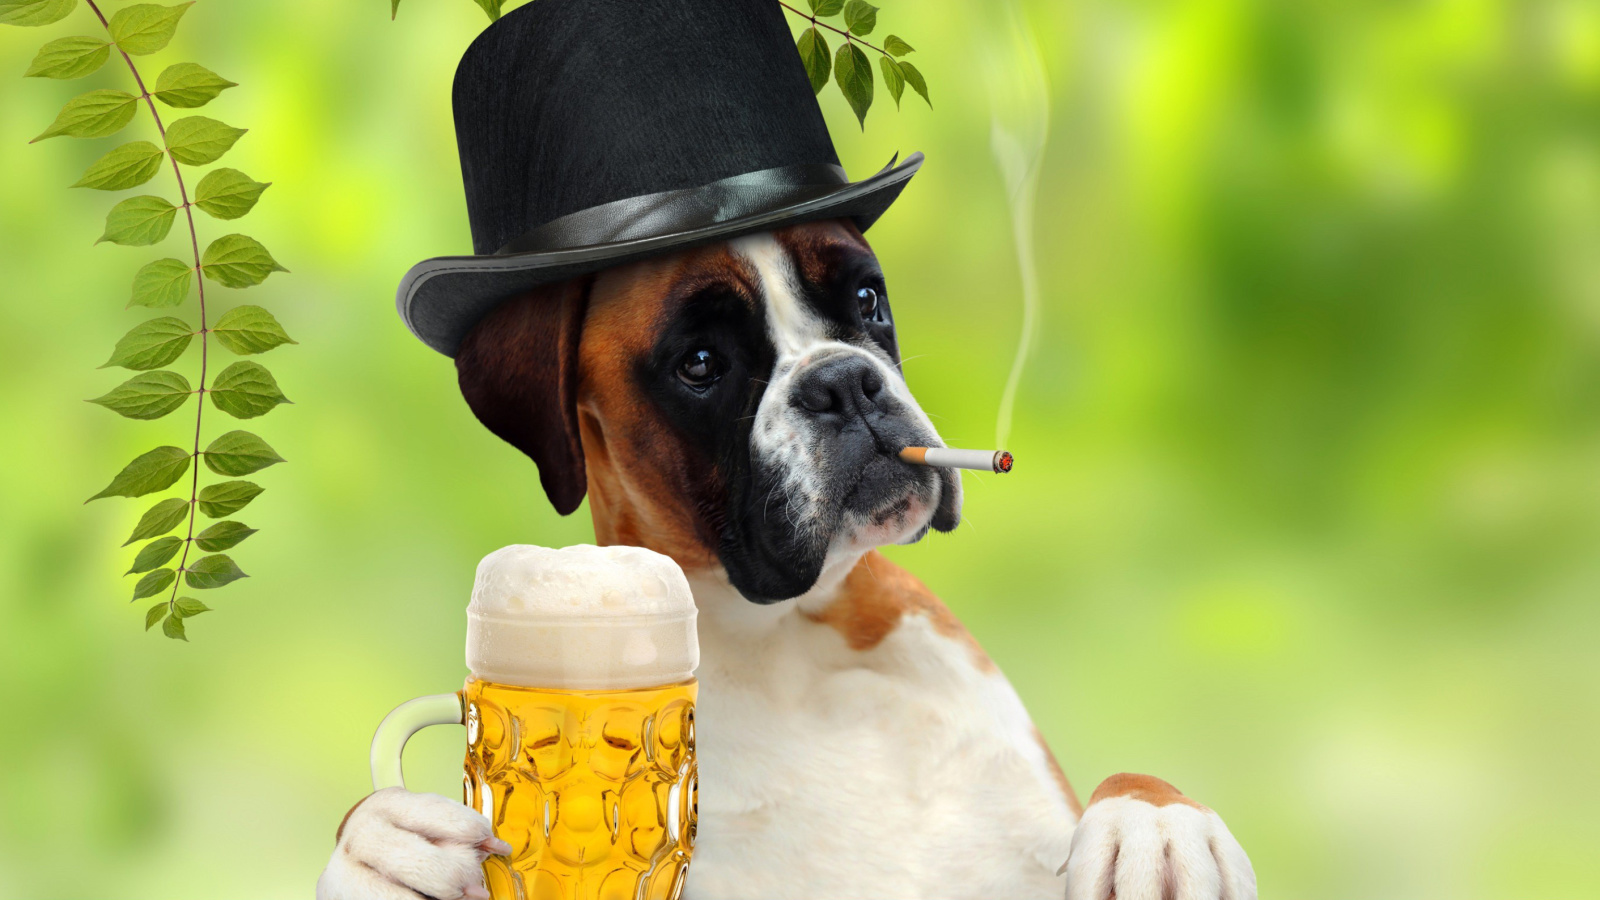 Dog drinking beer screenshot #1 1600x900